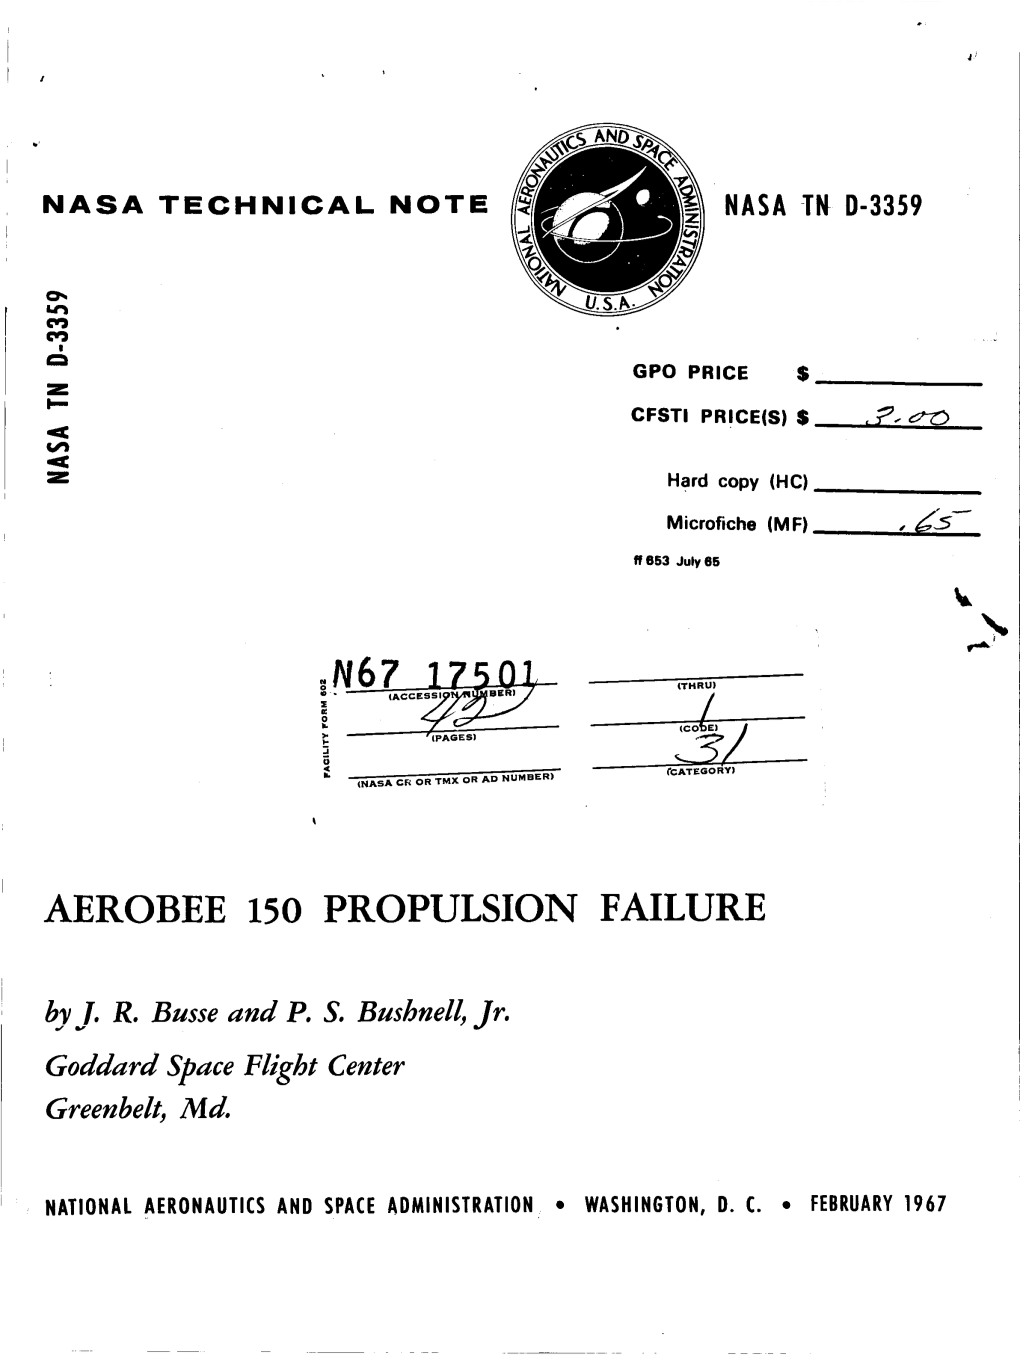 Aerobee 150 Propulsion Failure